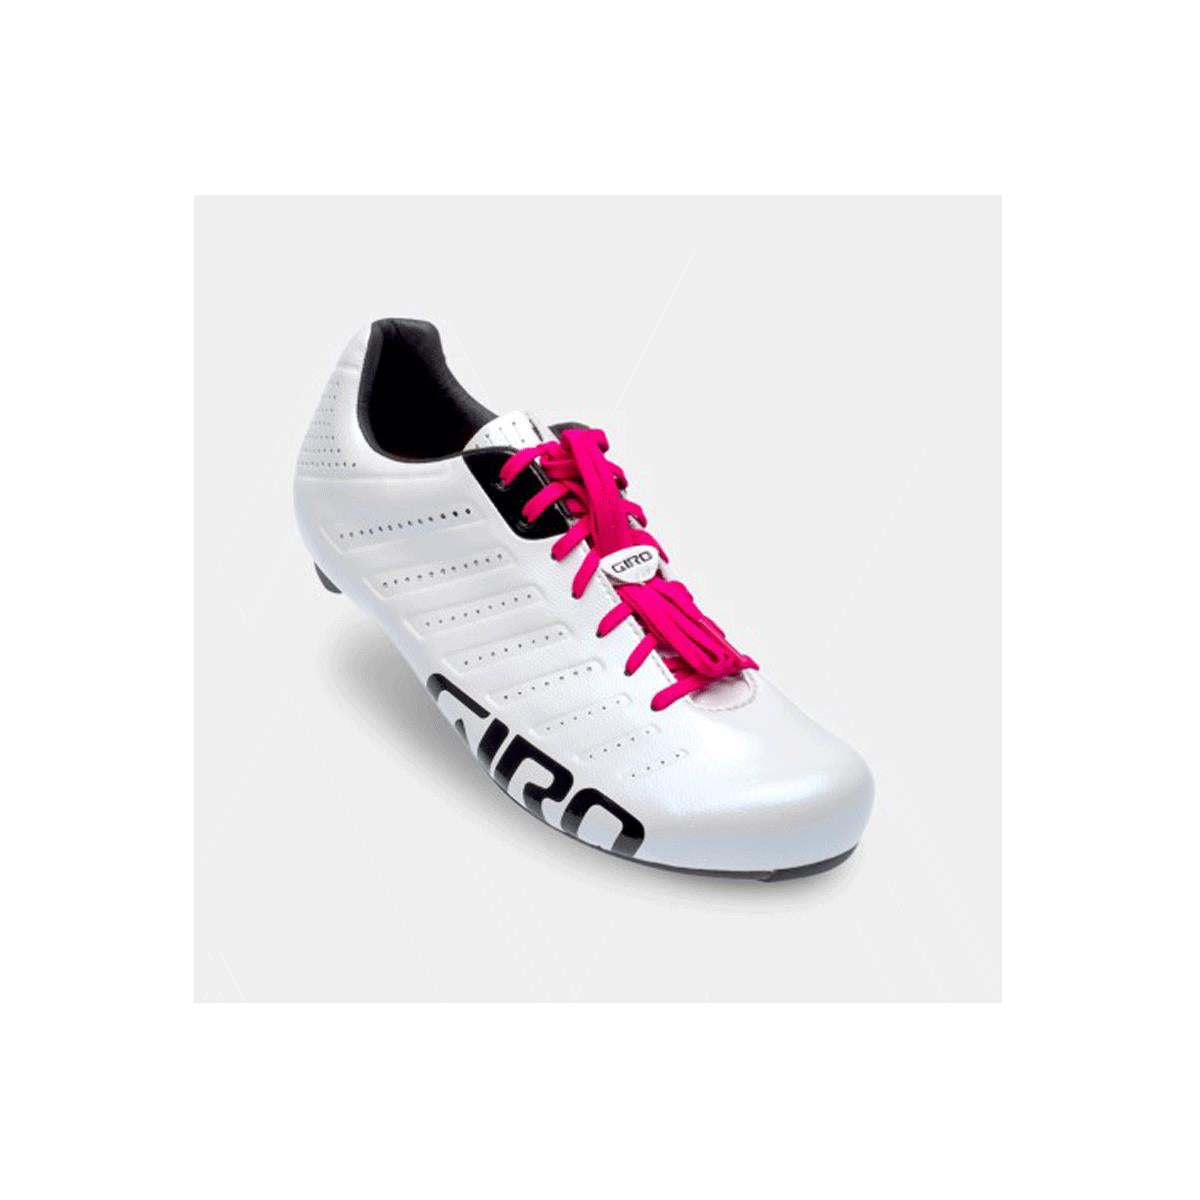 Giro Empire Cycling Shoe Laces